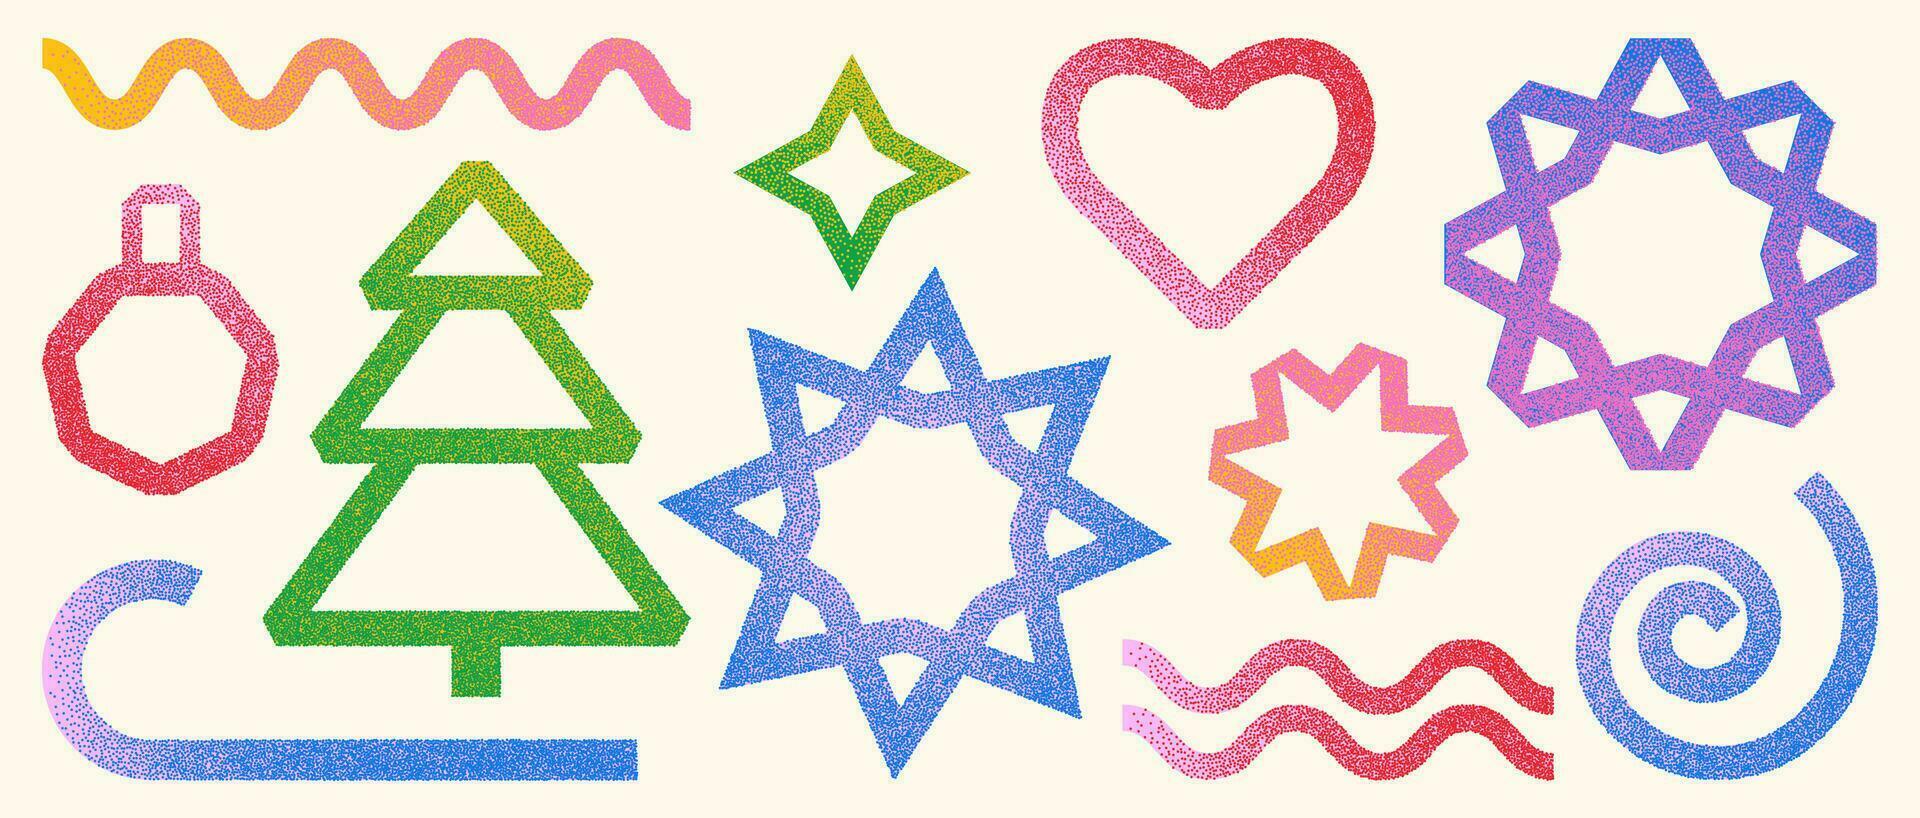 een reeks van kleurrijk Kerstmis vormen met een korrelig effect. vector illustratie van meetkundig symbolen van Kerstmis boom, sneeuwvlok, ster, hart, spiraal en andere elementen.